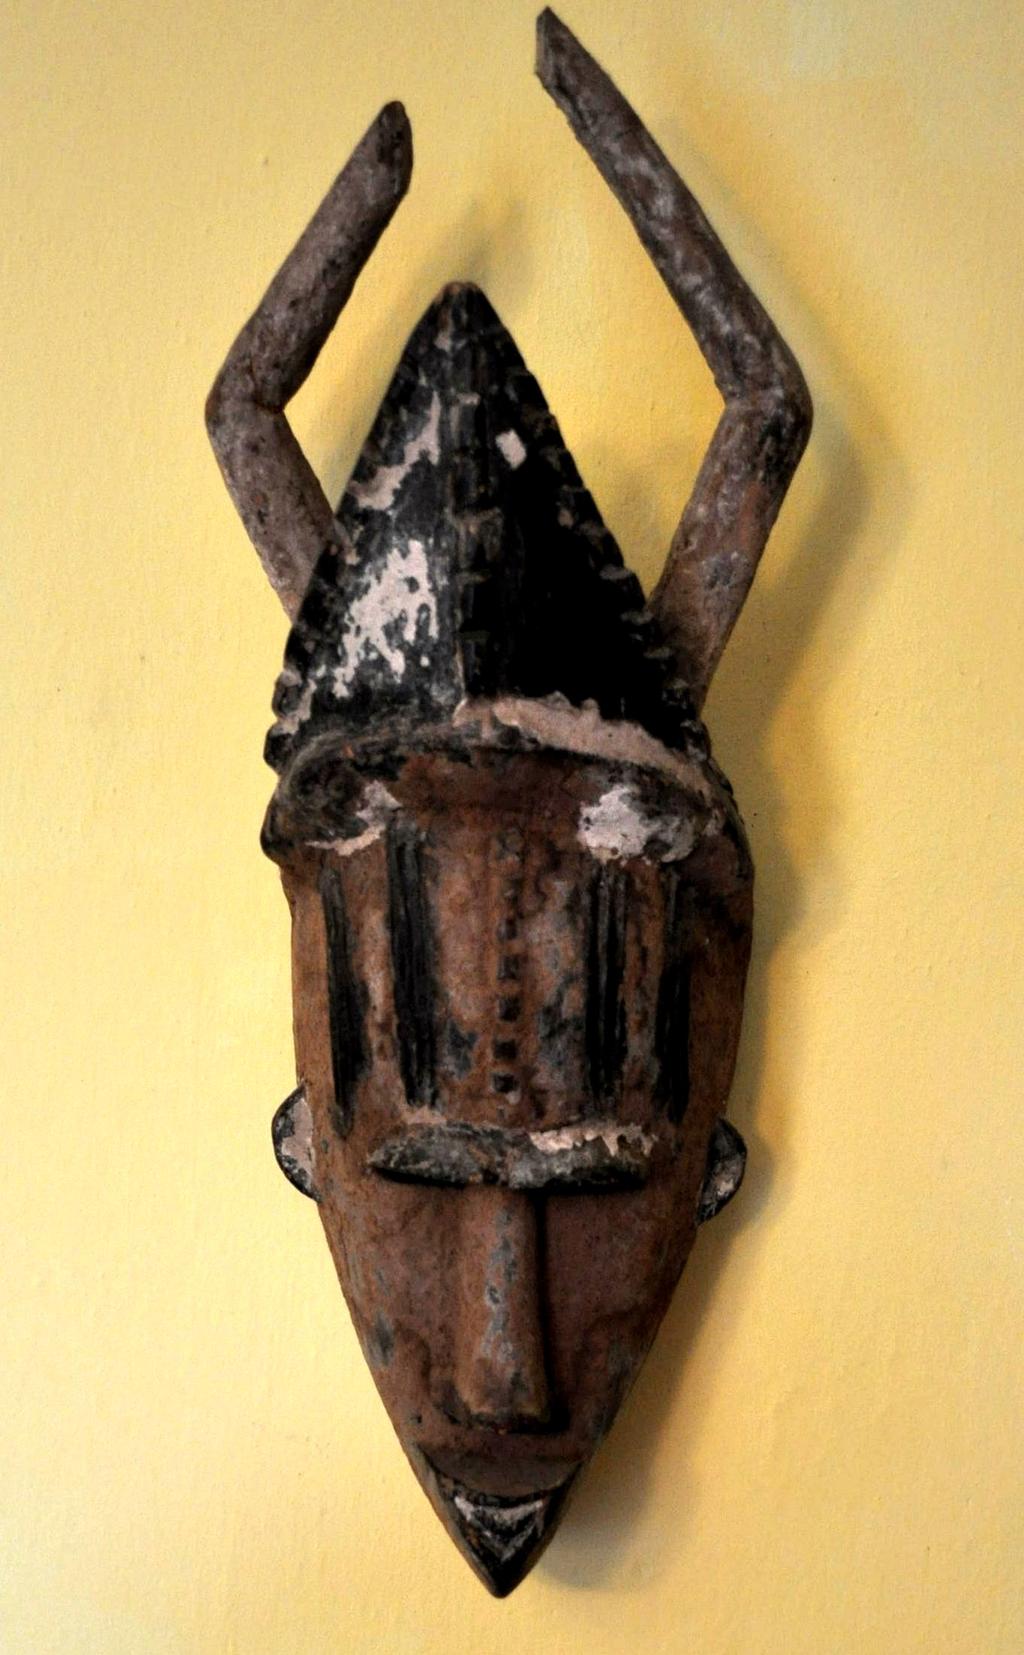 NIGERIA Urhobo, maska używana w ceremoniach związanych z duchem wody charakterystycznych też dla